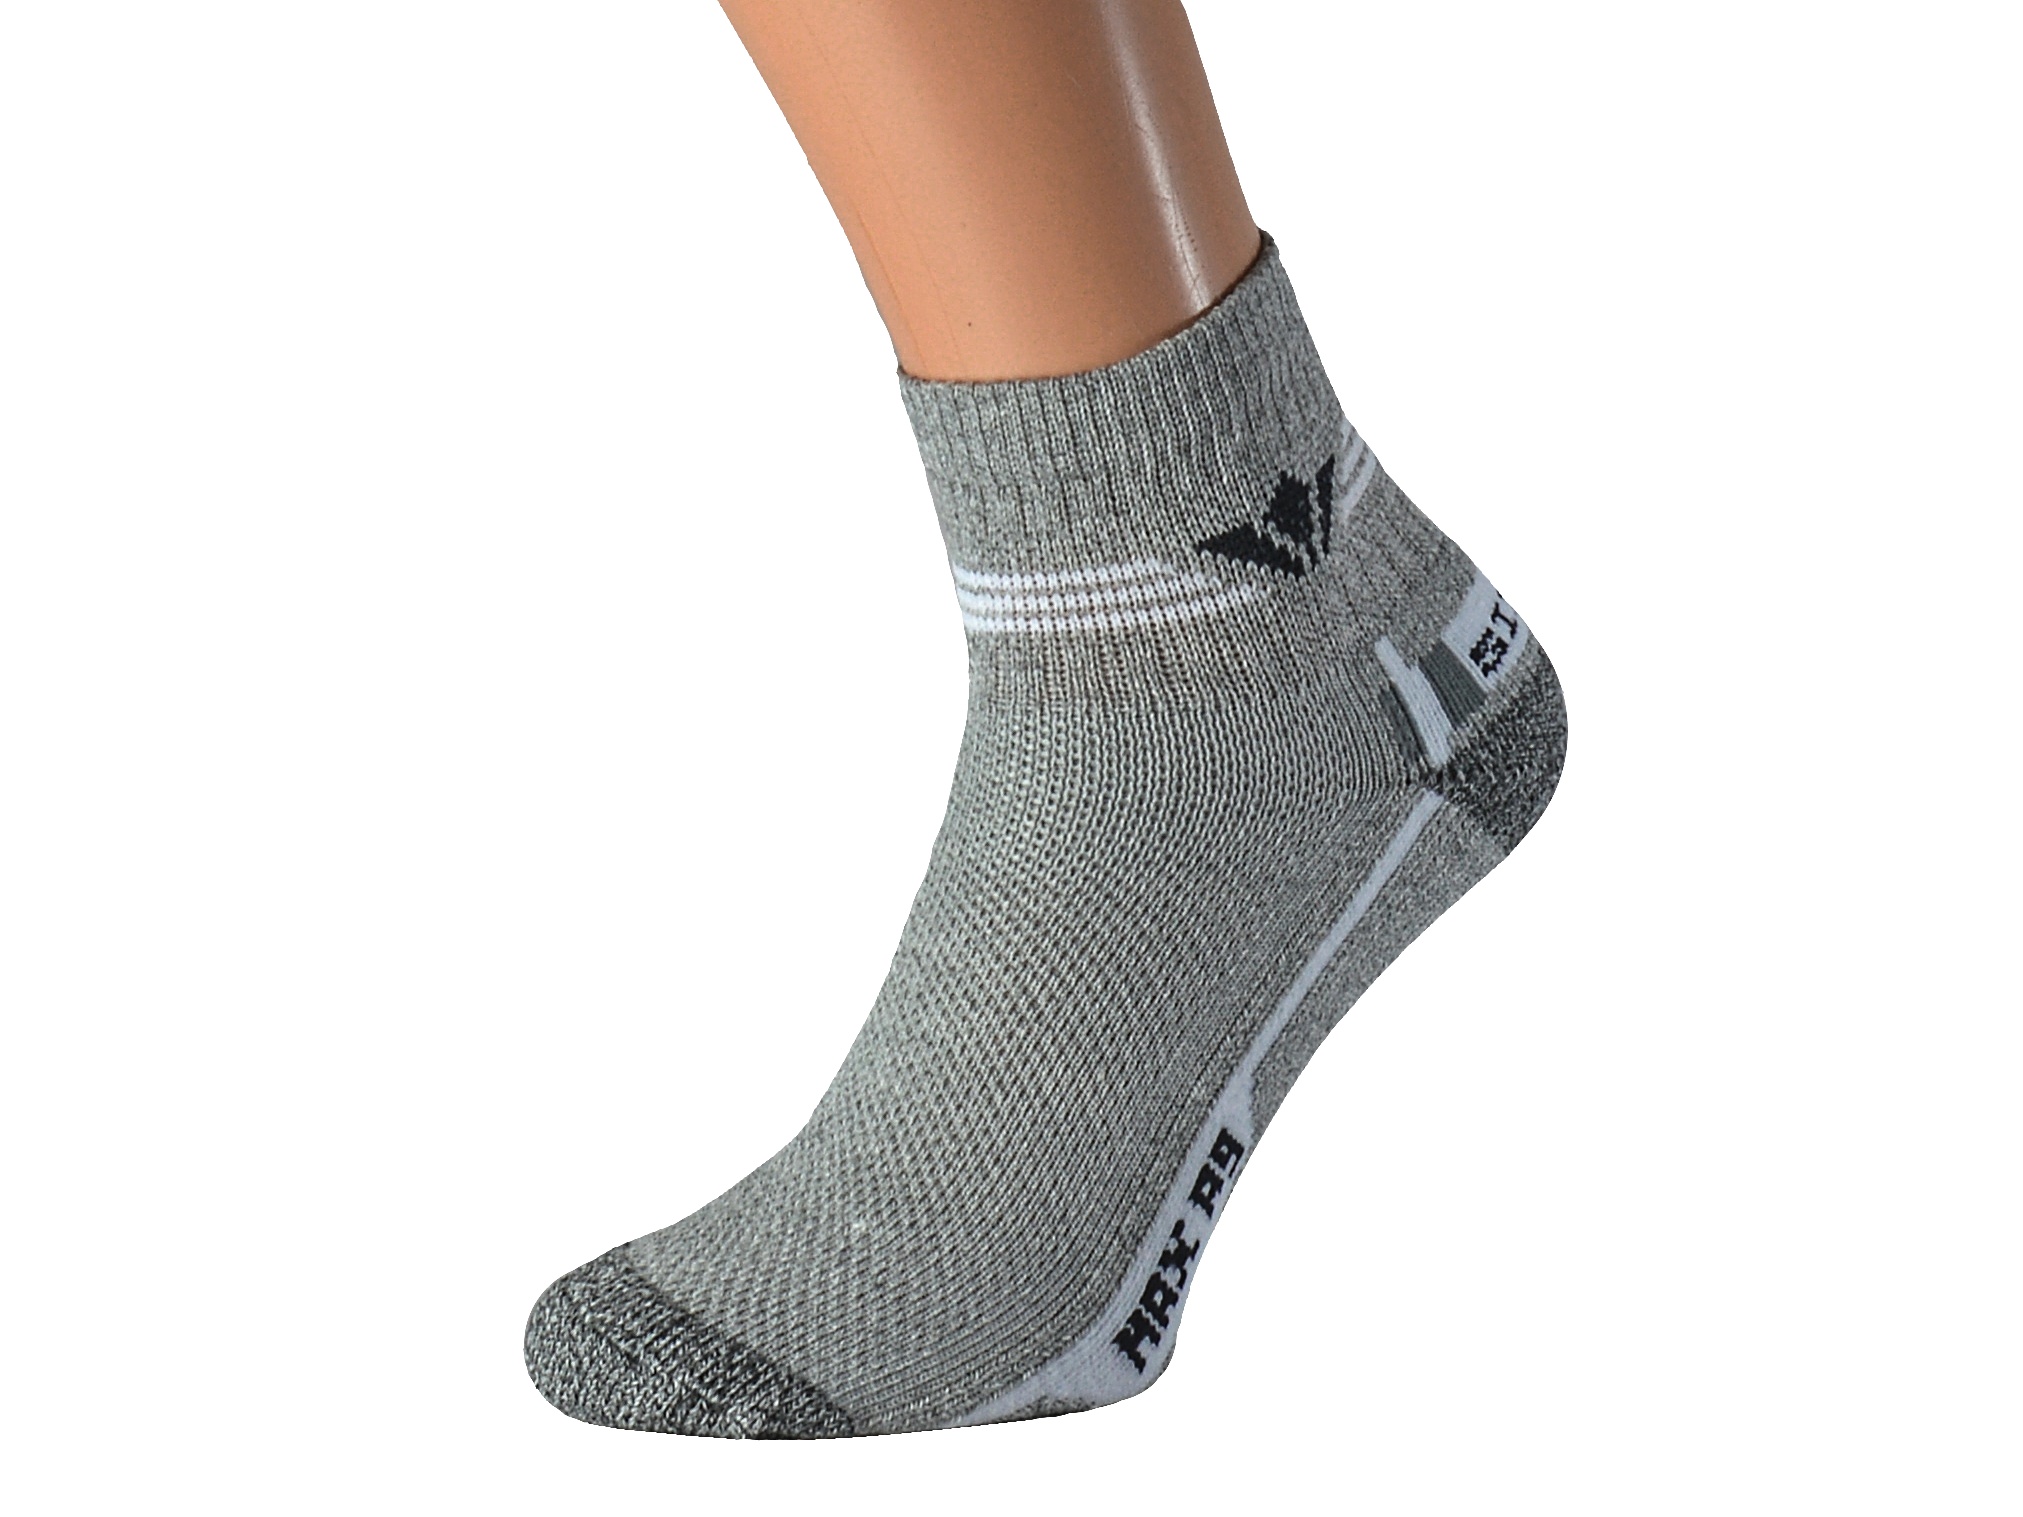 Froté ponožky se stříbrem KRASITO KUKS Barva: Světle šedé, Velikost: EUR 43-45 (UK 9-10)